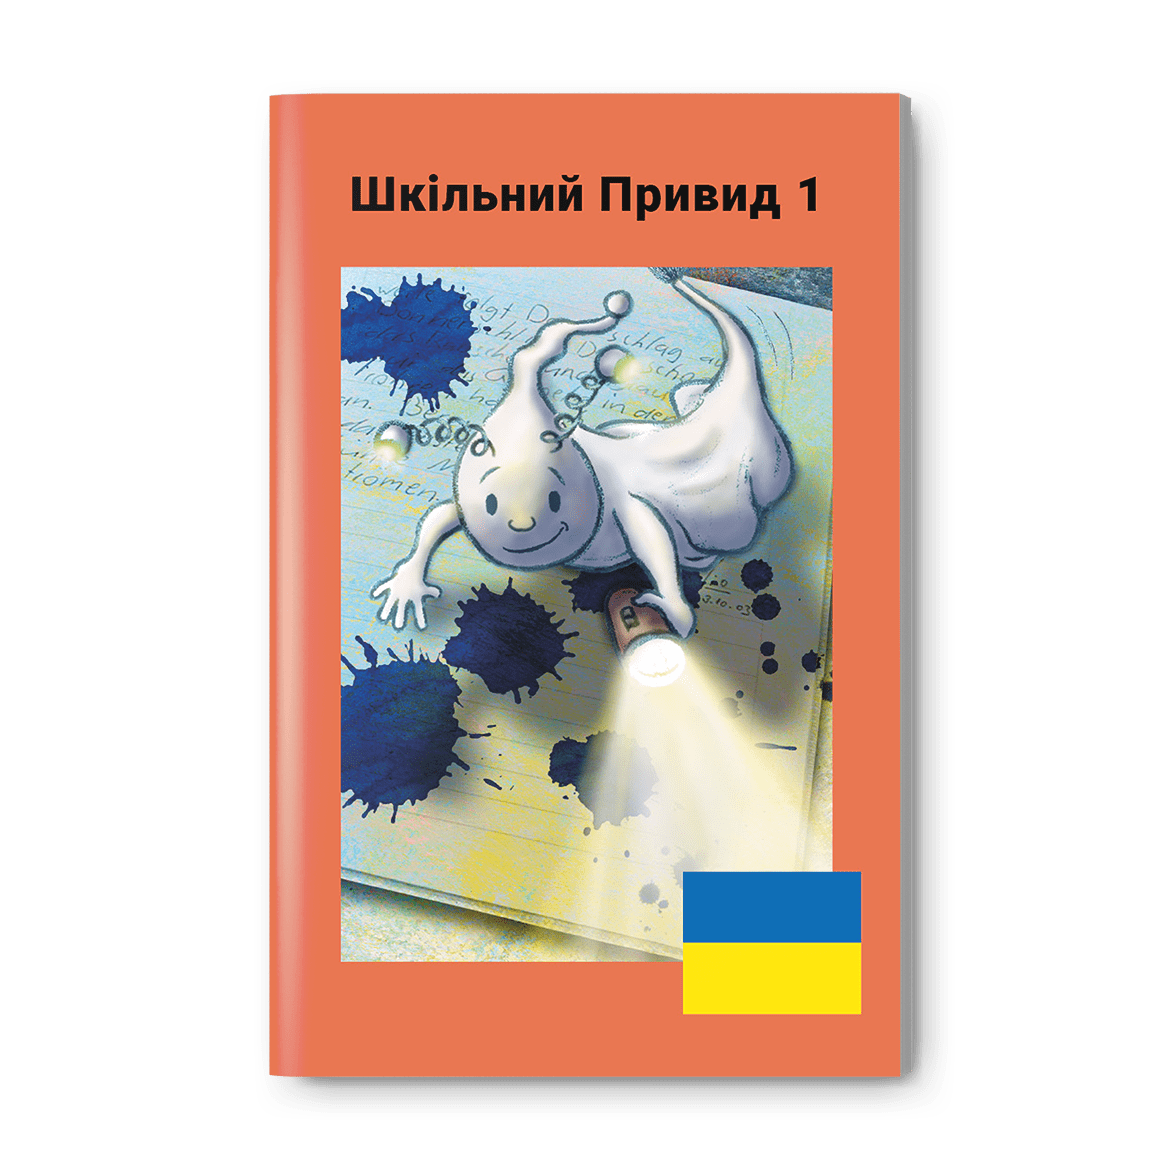 Ukrainische Ausgabe: Das Schulhausgespenst 1